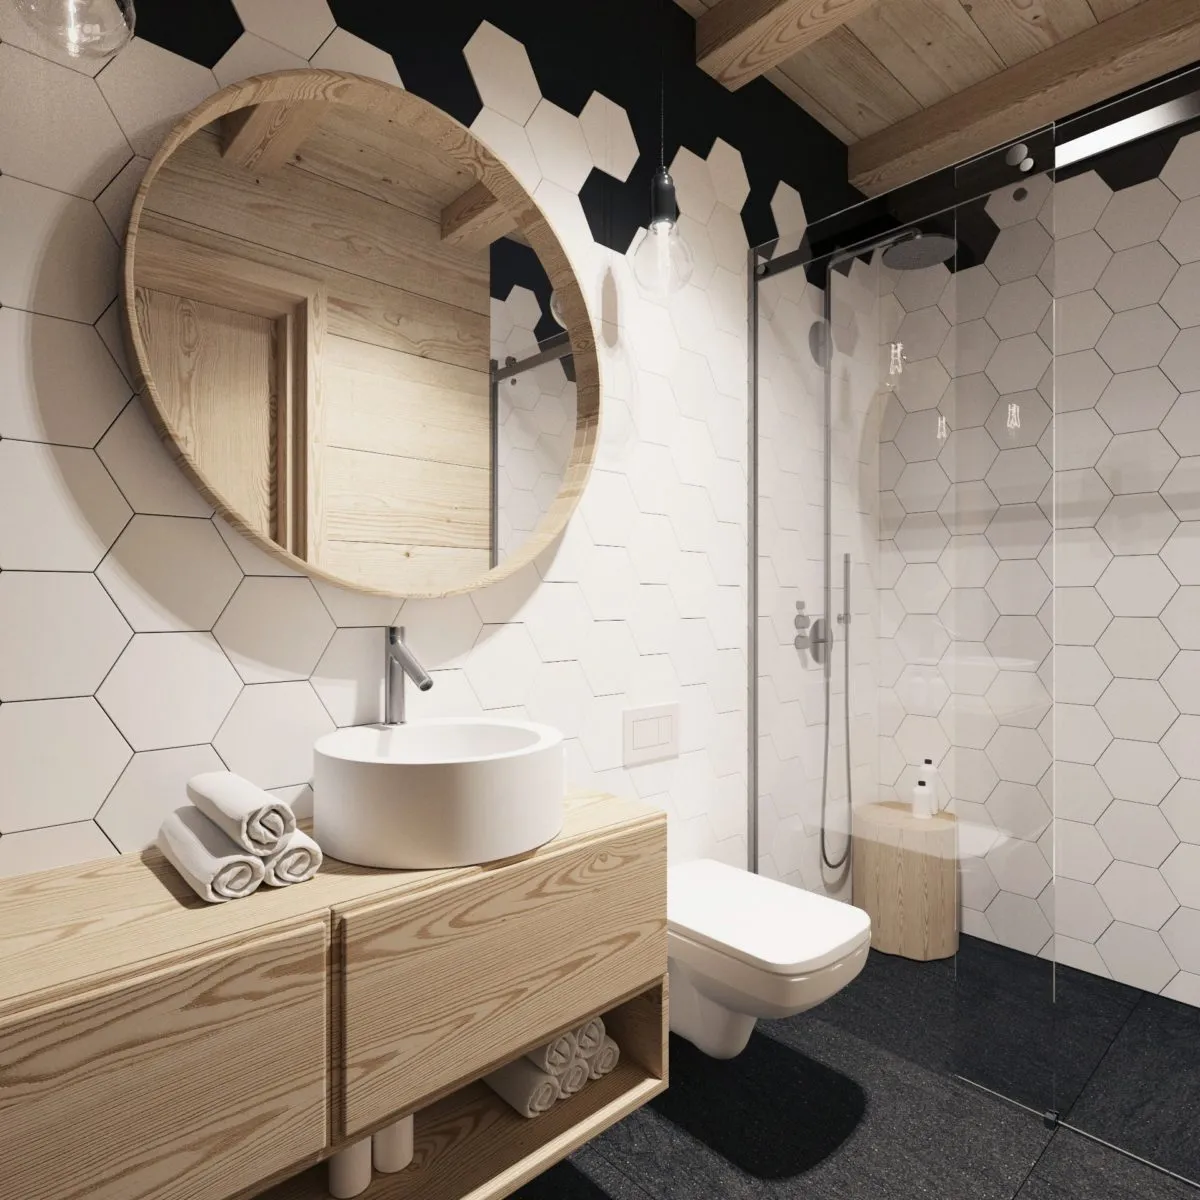 Белая плитка в форме шестиугольника на стенах ванной комнаты